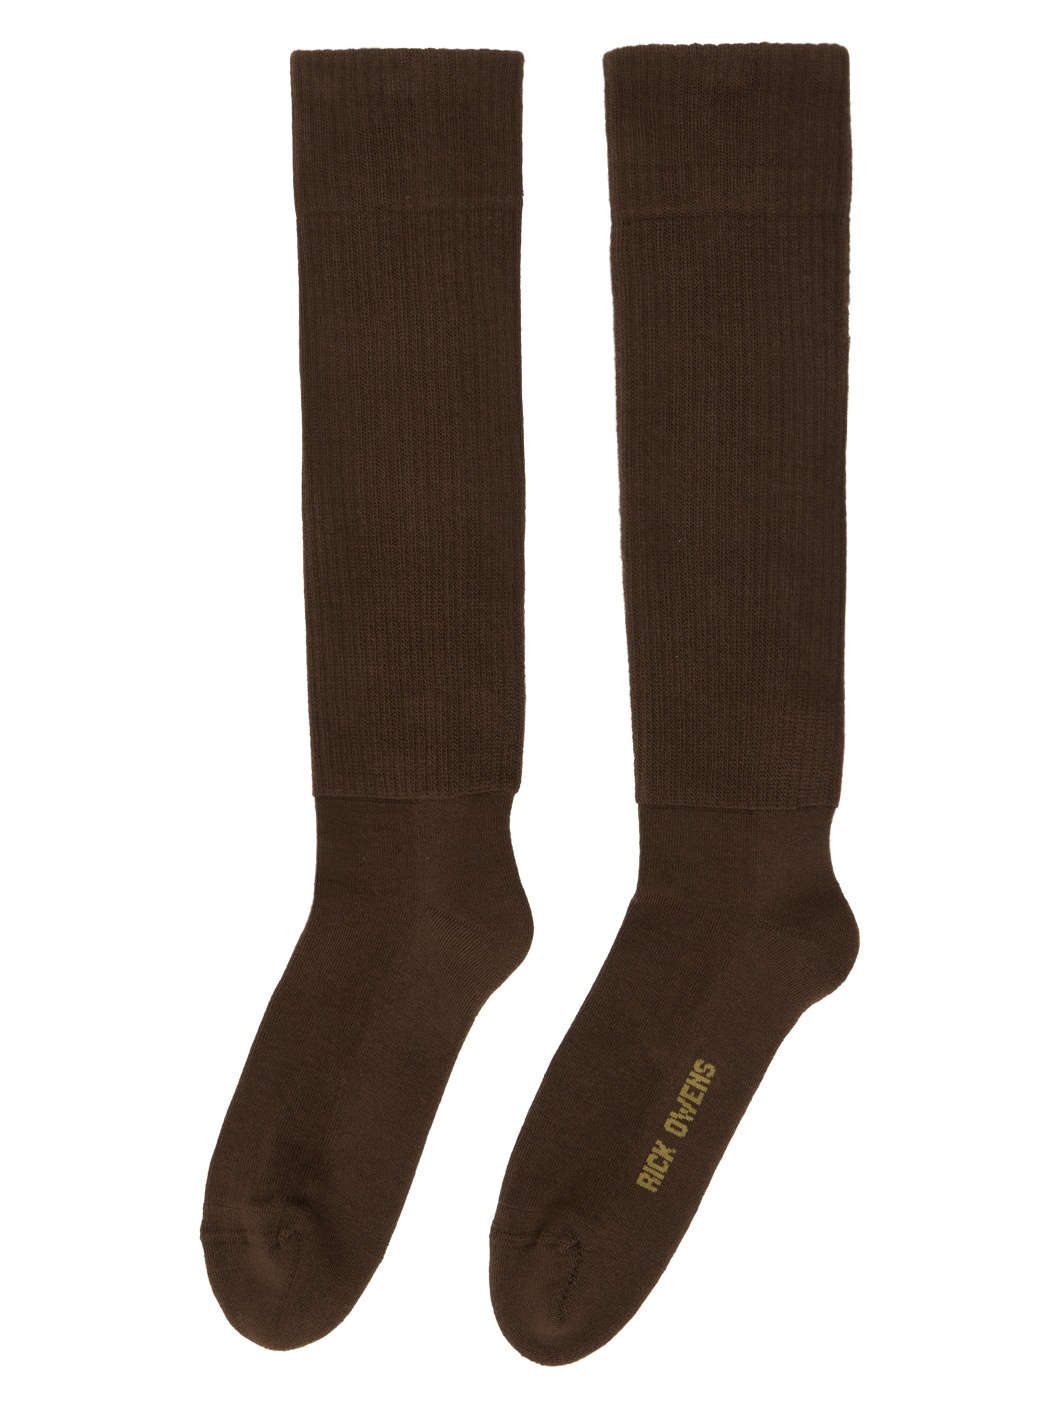 Brown Knee High Socks - 2